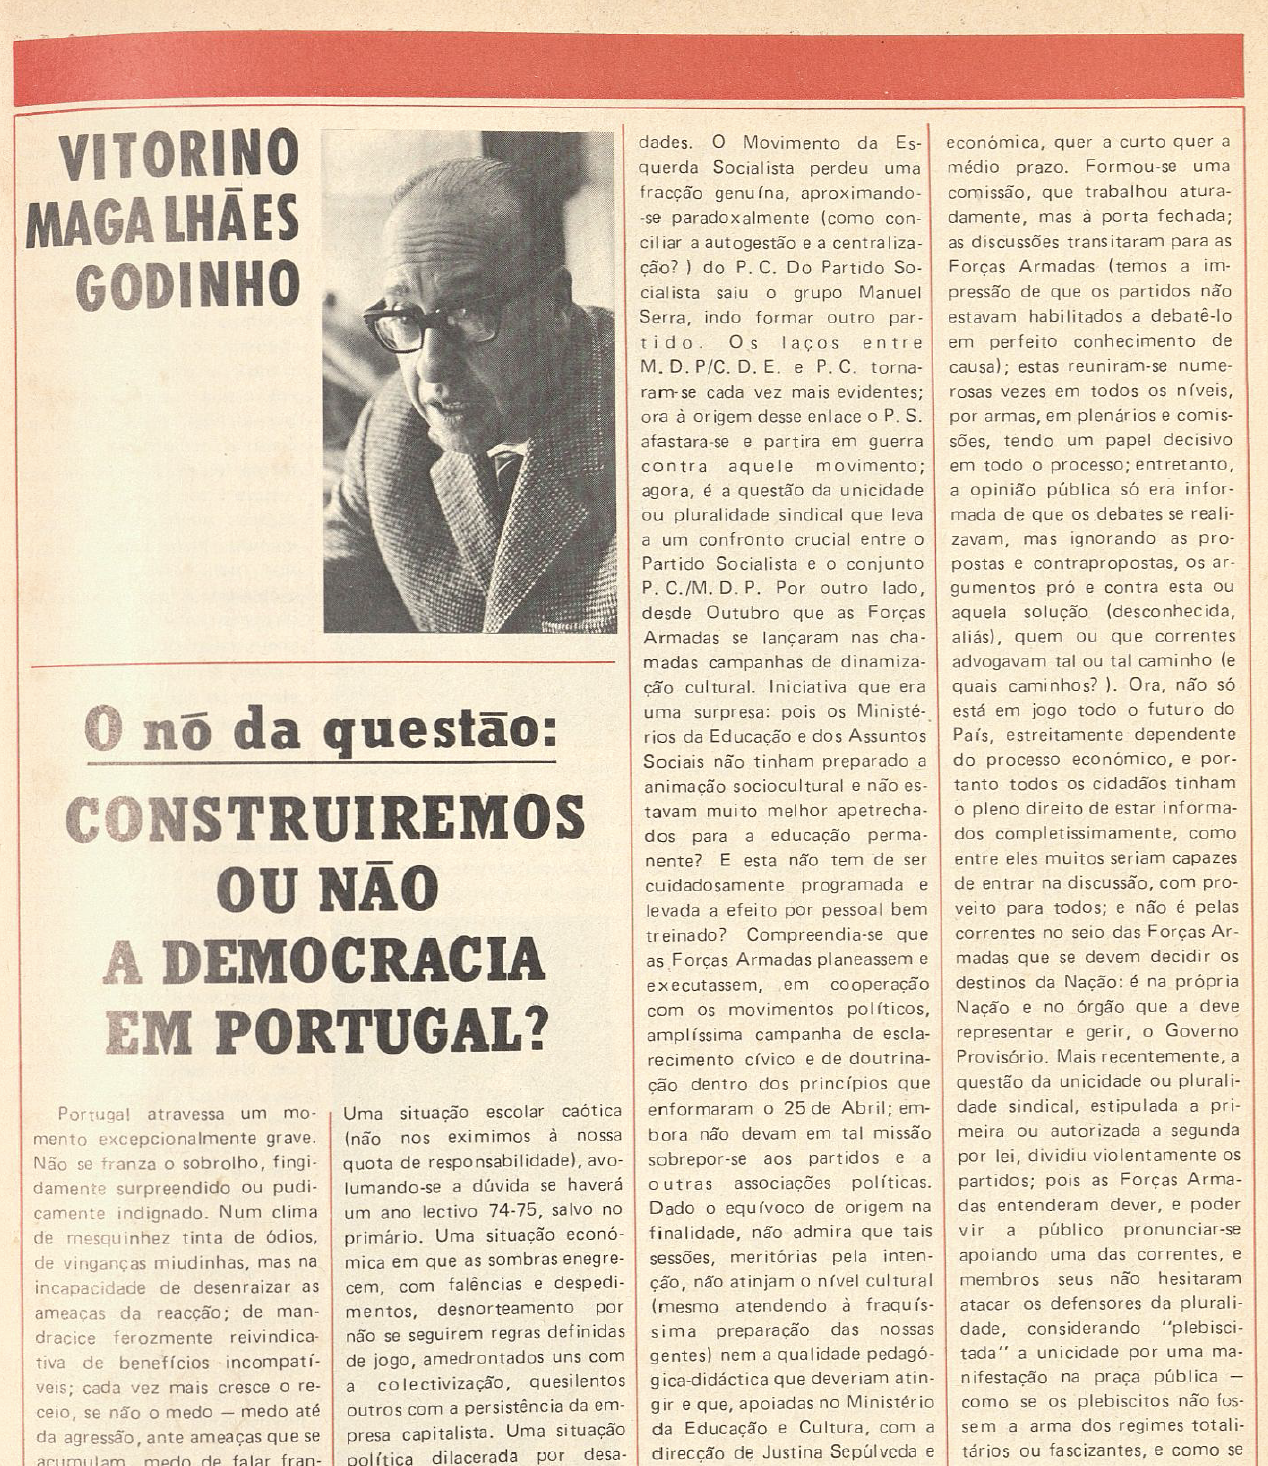 "Vitorino Magalhães Godinho Construiremos a democracia em Portugal?"